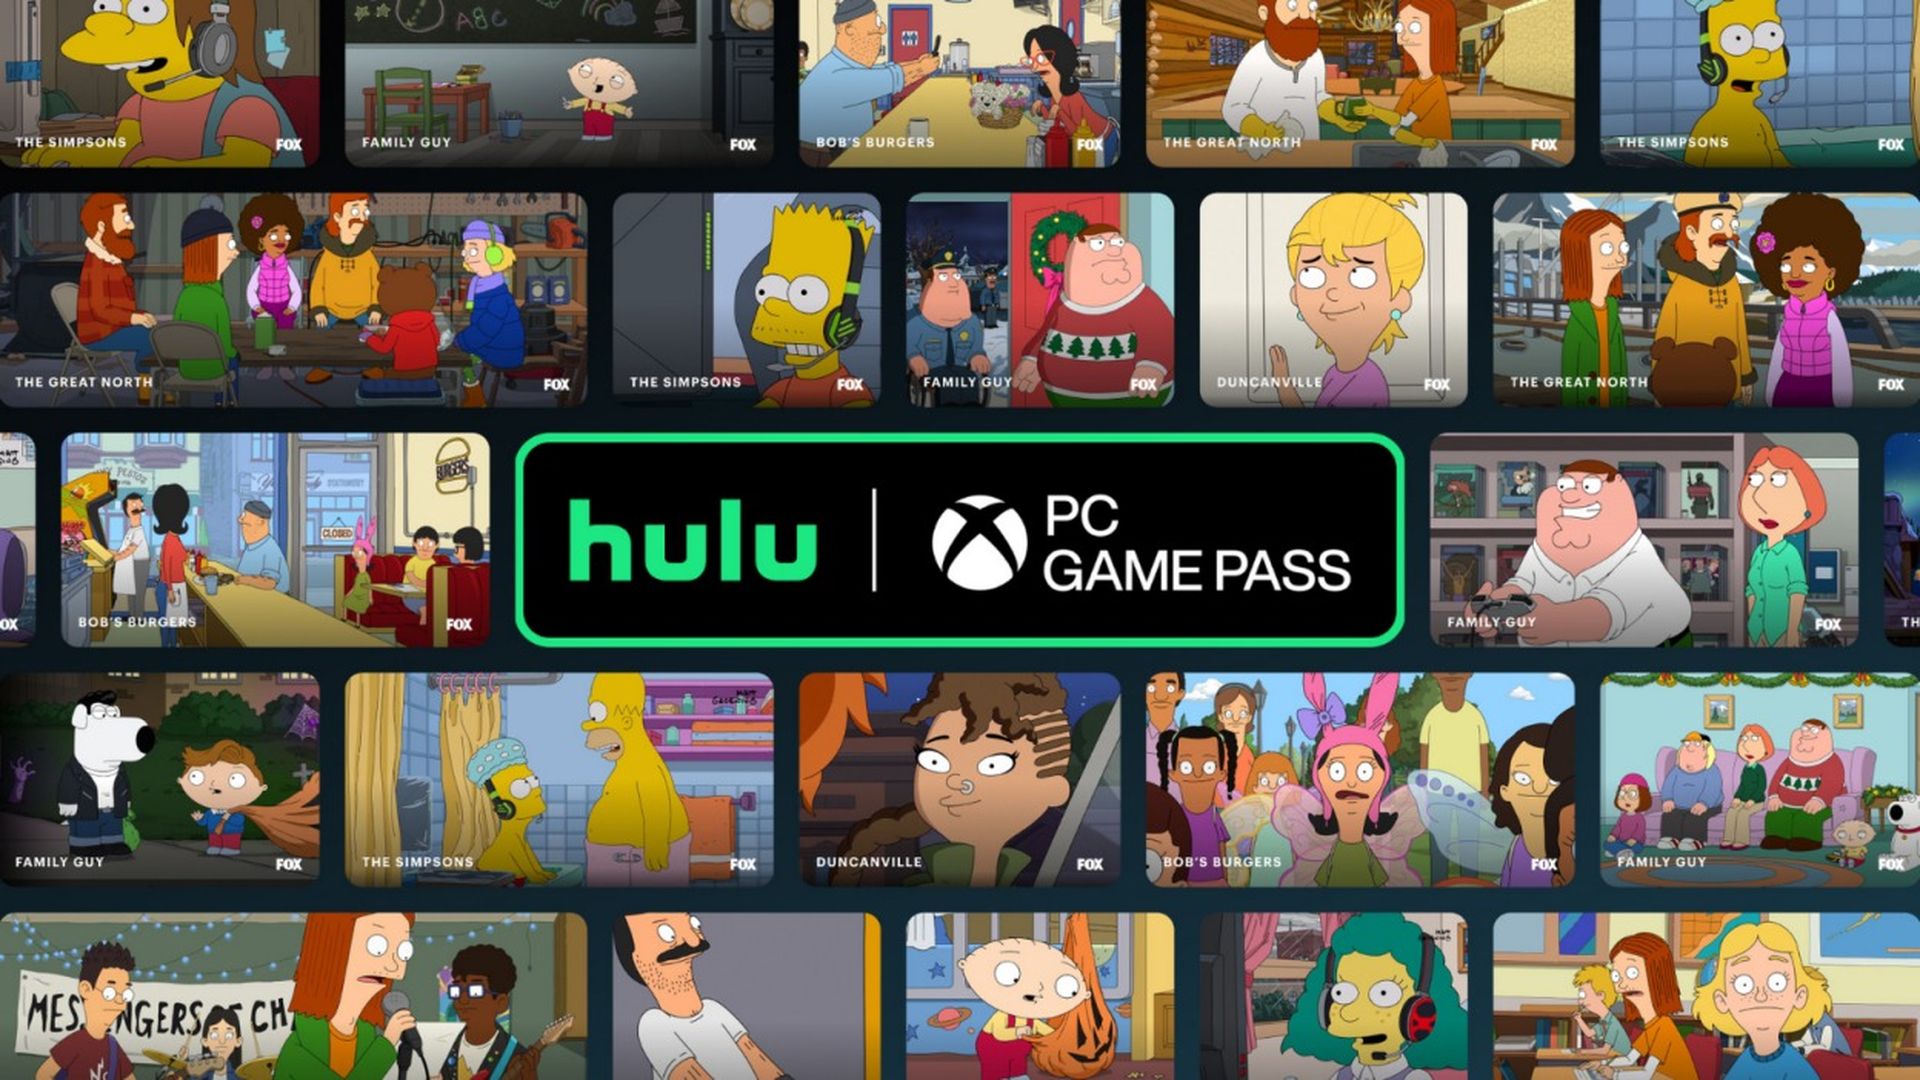 В рамках недавней акции Hulu Game Pass для ПК предлагает 3 месяца бесплатного использования по подписке Xbox и потоковой передачи игр EA.